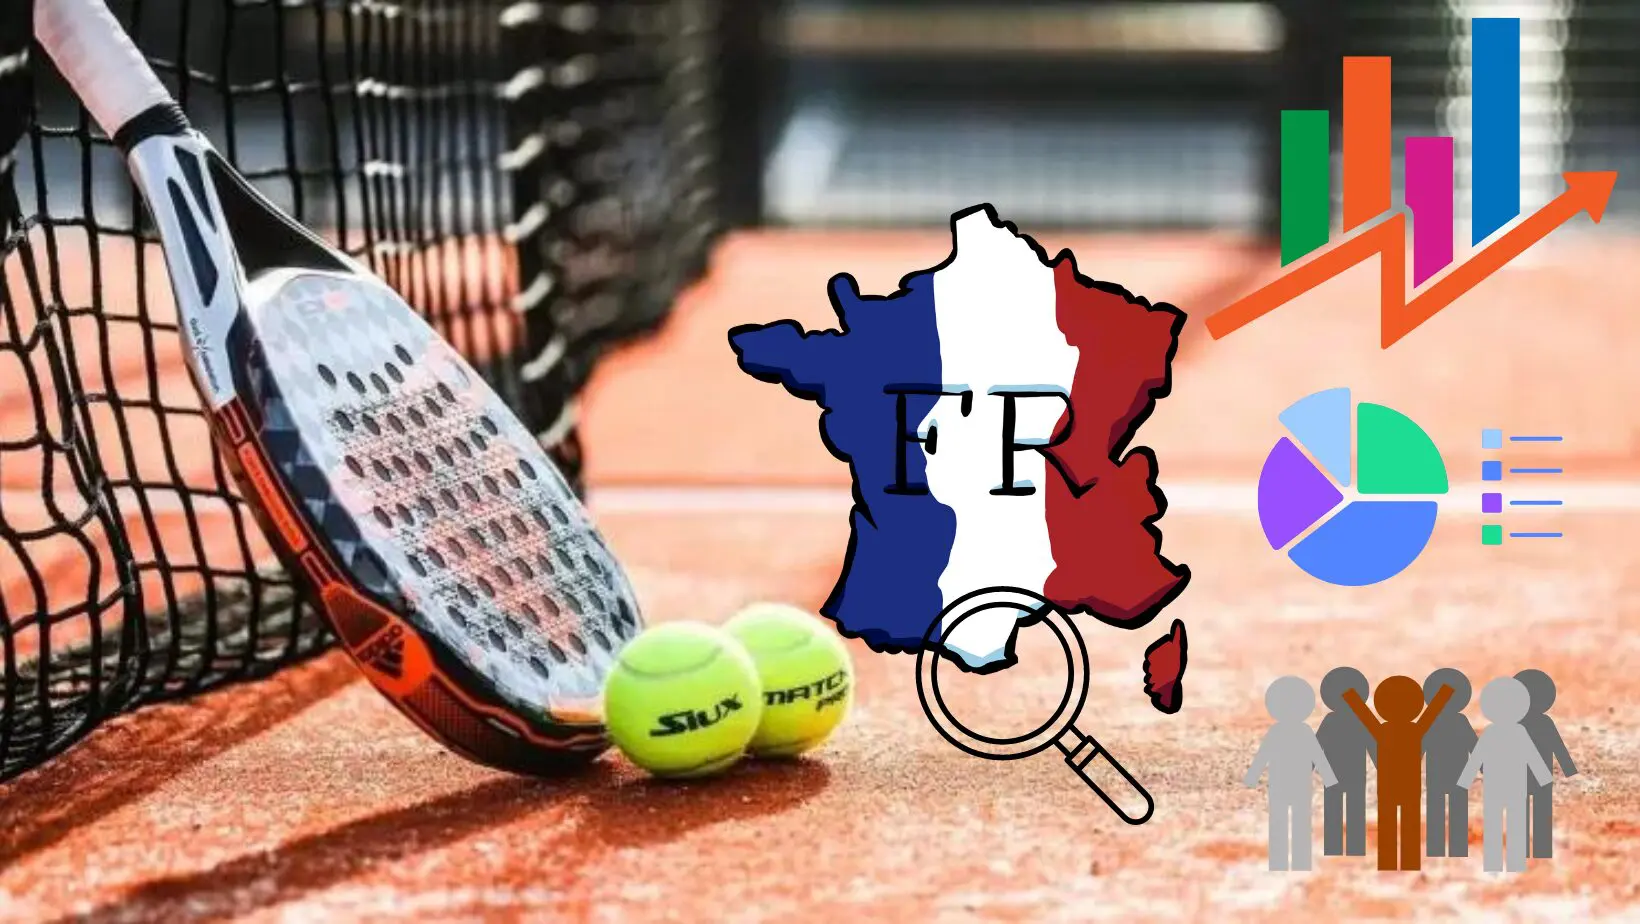 Spillerprofil padel i Frankrig: resultat af en national undersøgelse af 645 spillere